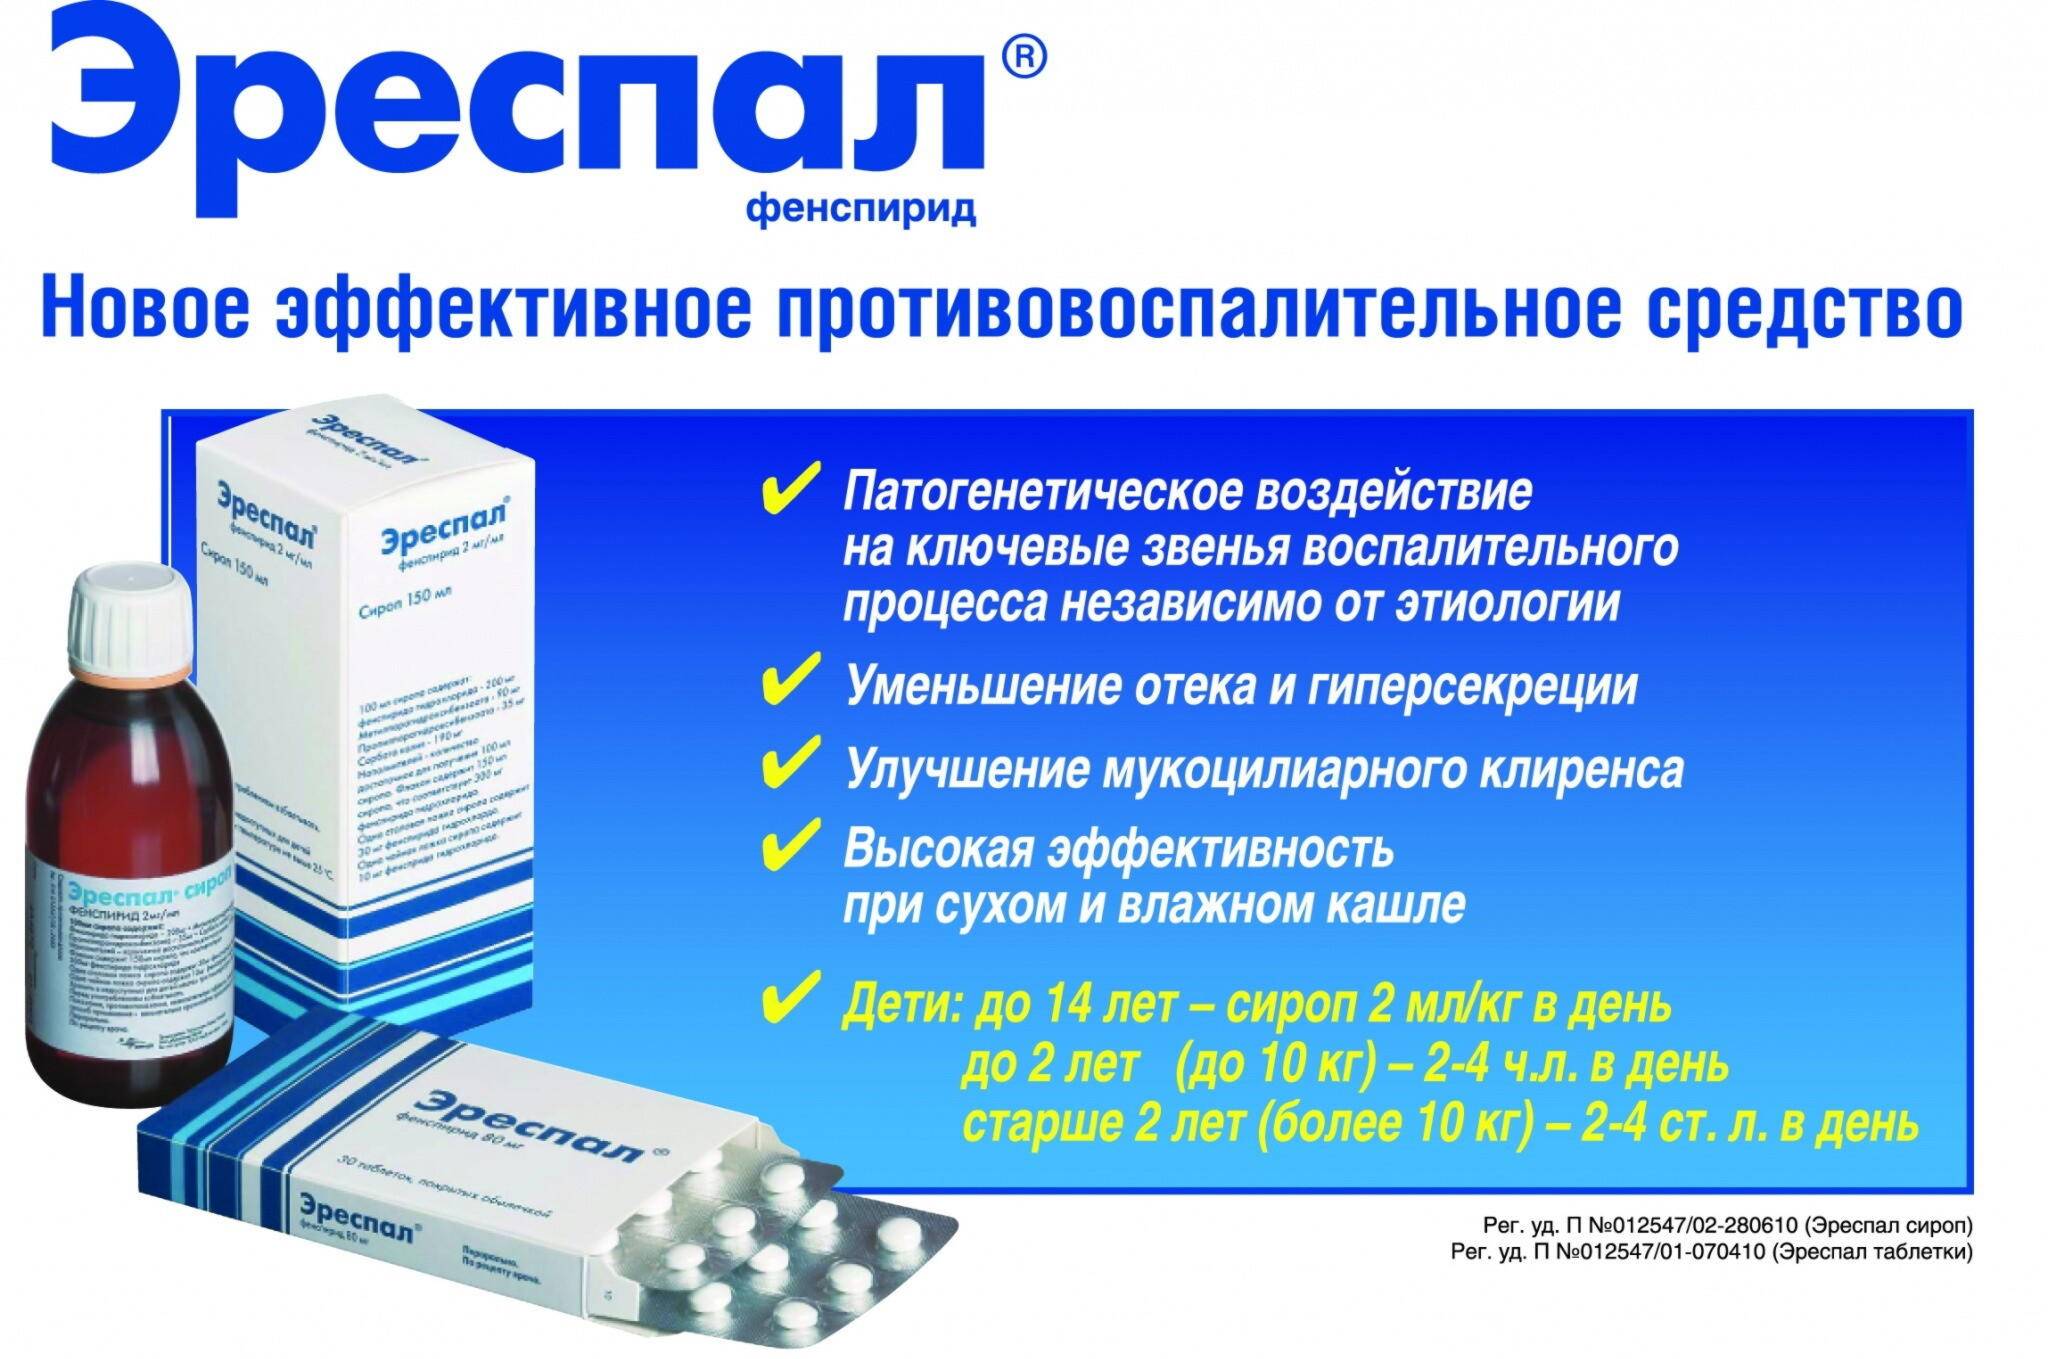 Препараты (таблетки, лекарства) от пневмонии: антибактериальные, обезболивающие, отхаркивающие, противовирусные